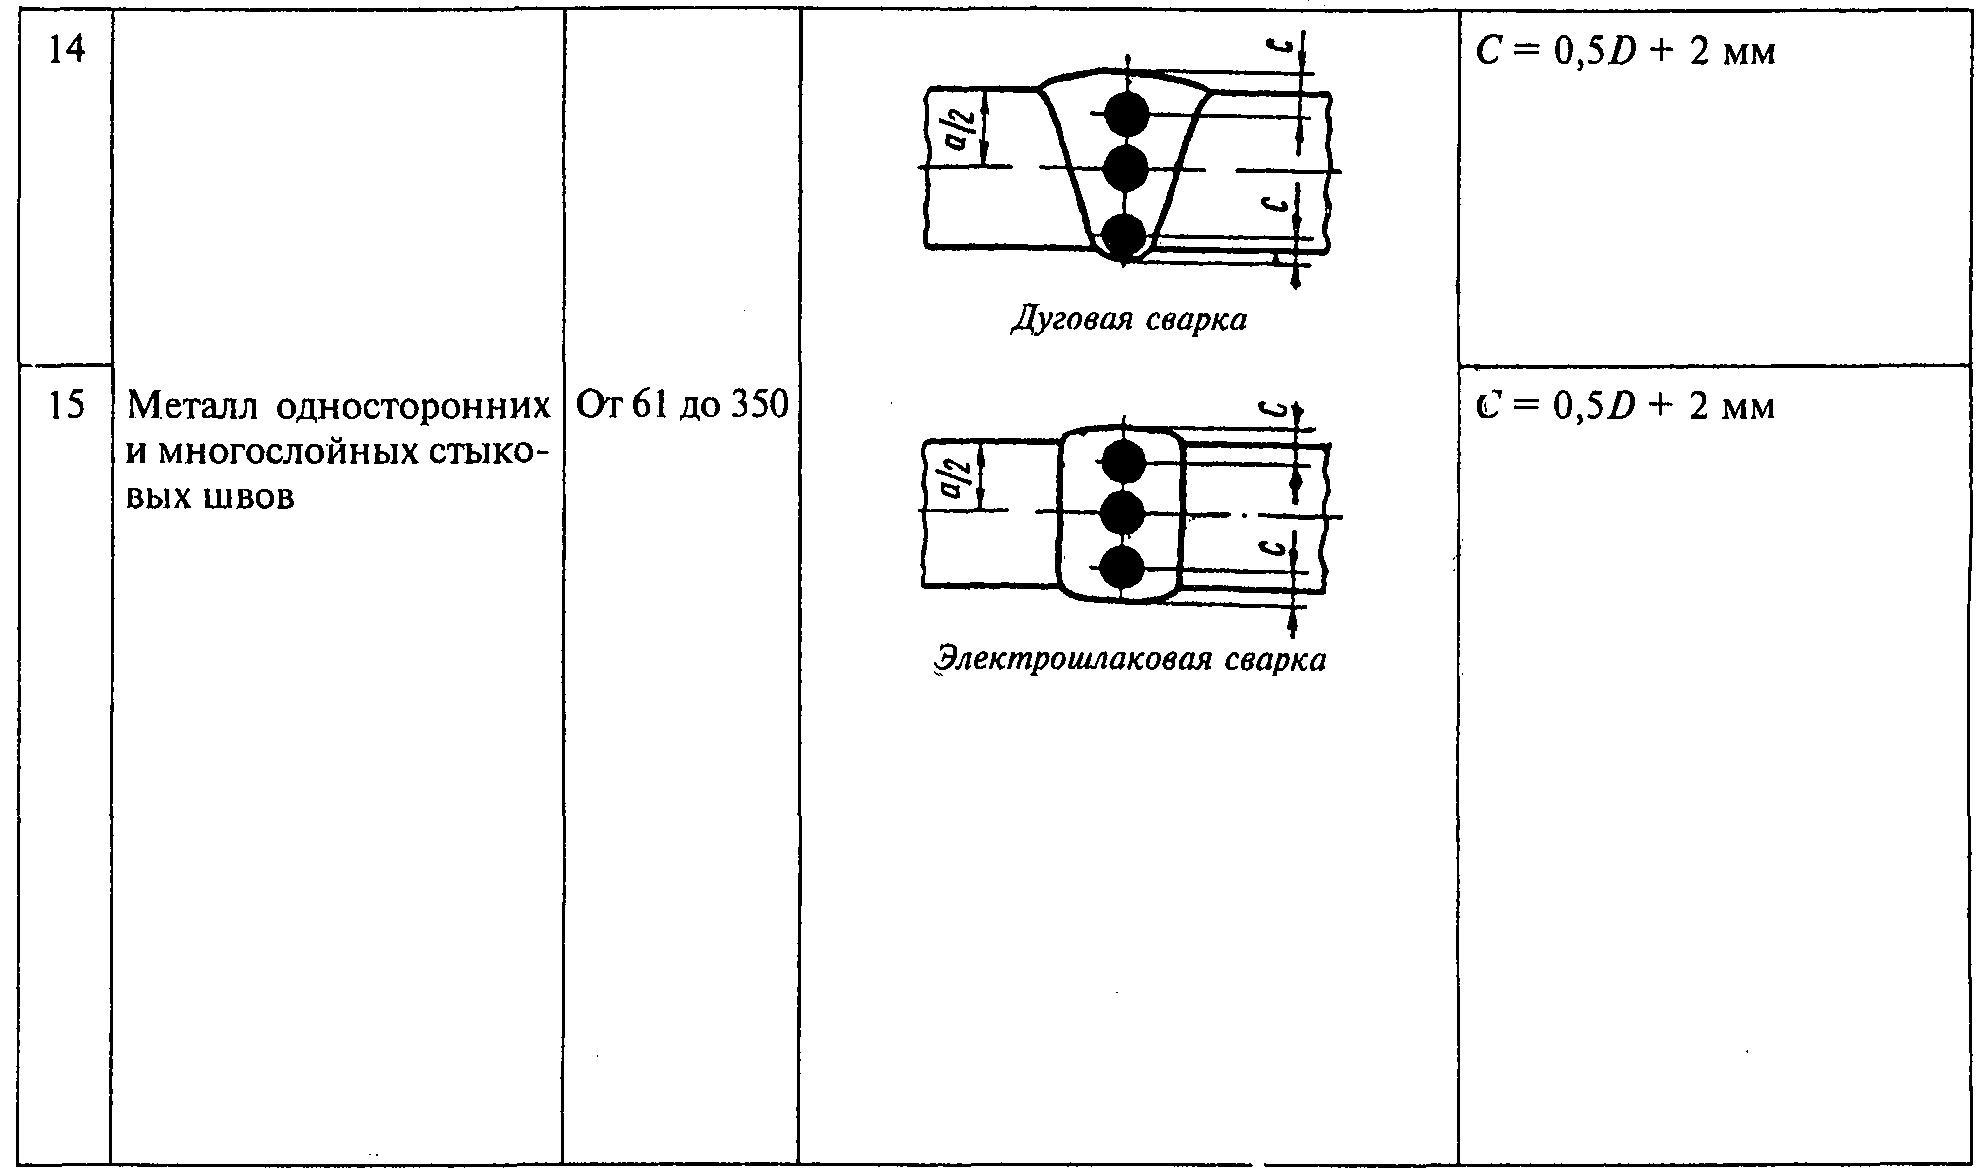 Методы определения механических свойств сварного соединения. Ст СЭВ 189-79. Ст СЭВ 713-83. Втулка сварного шва. Шов с шахматным расположением пример.